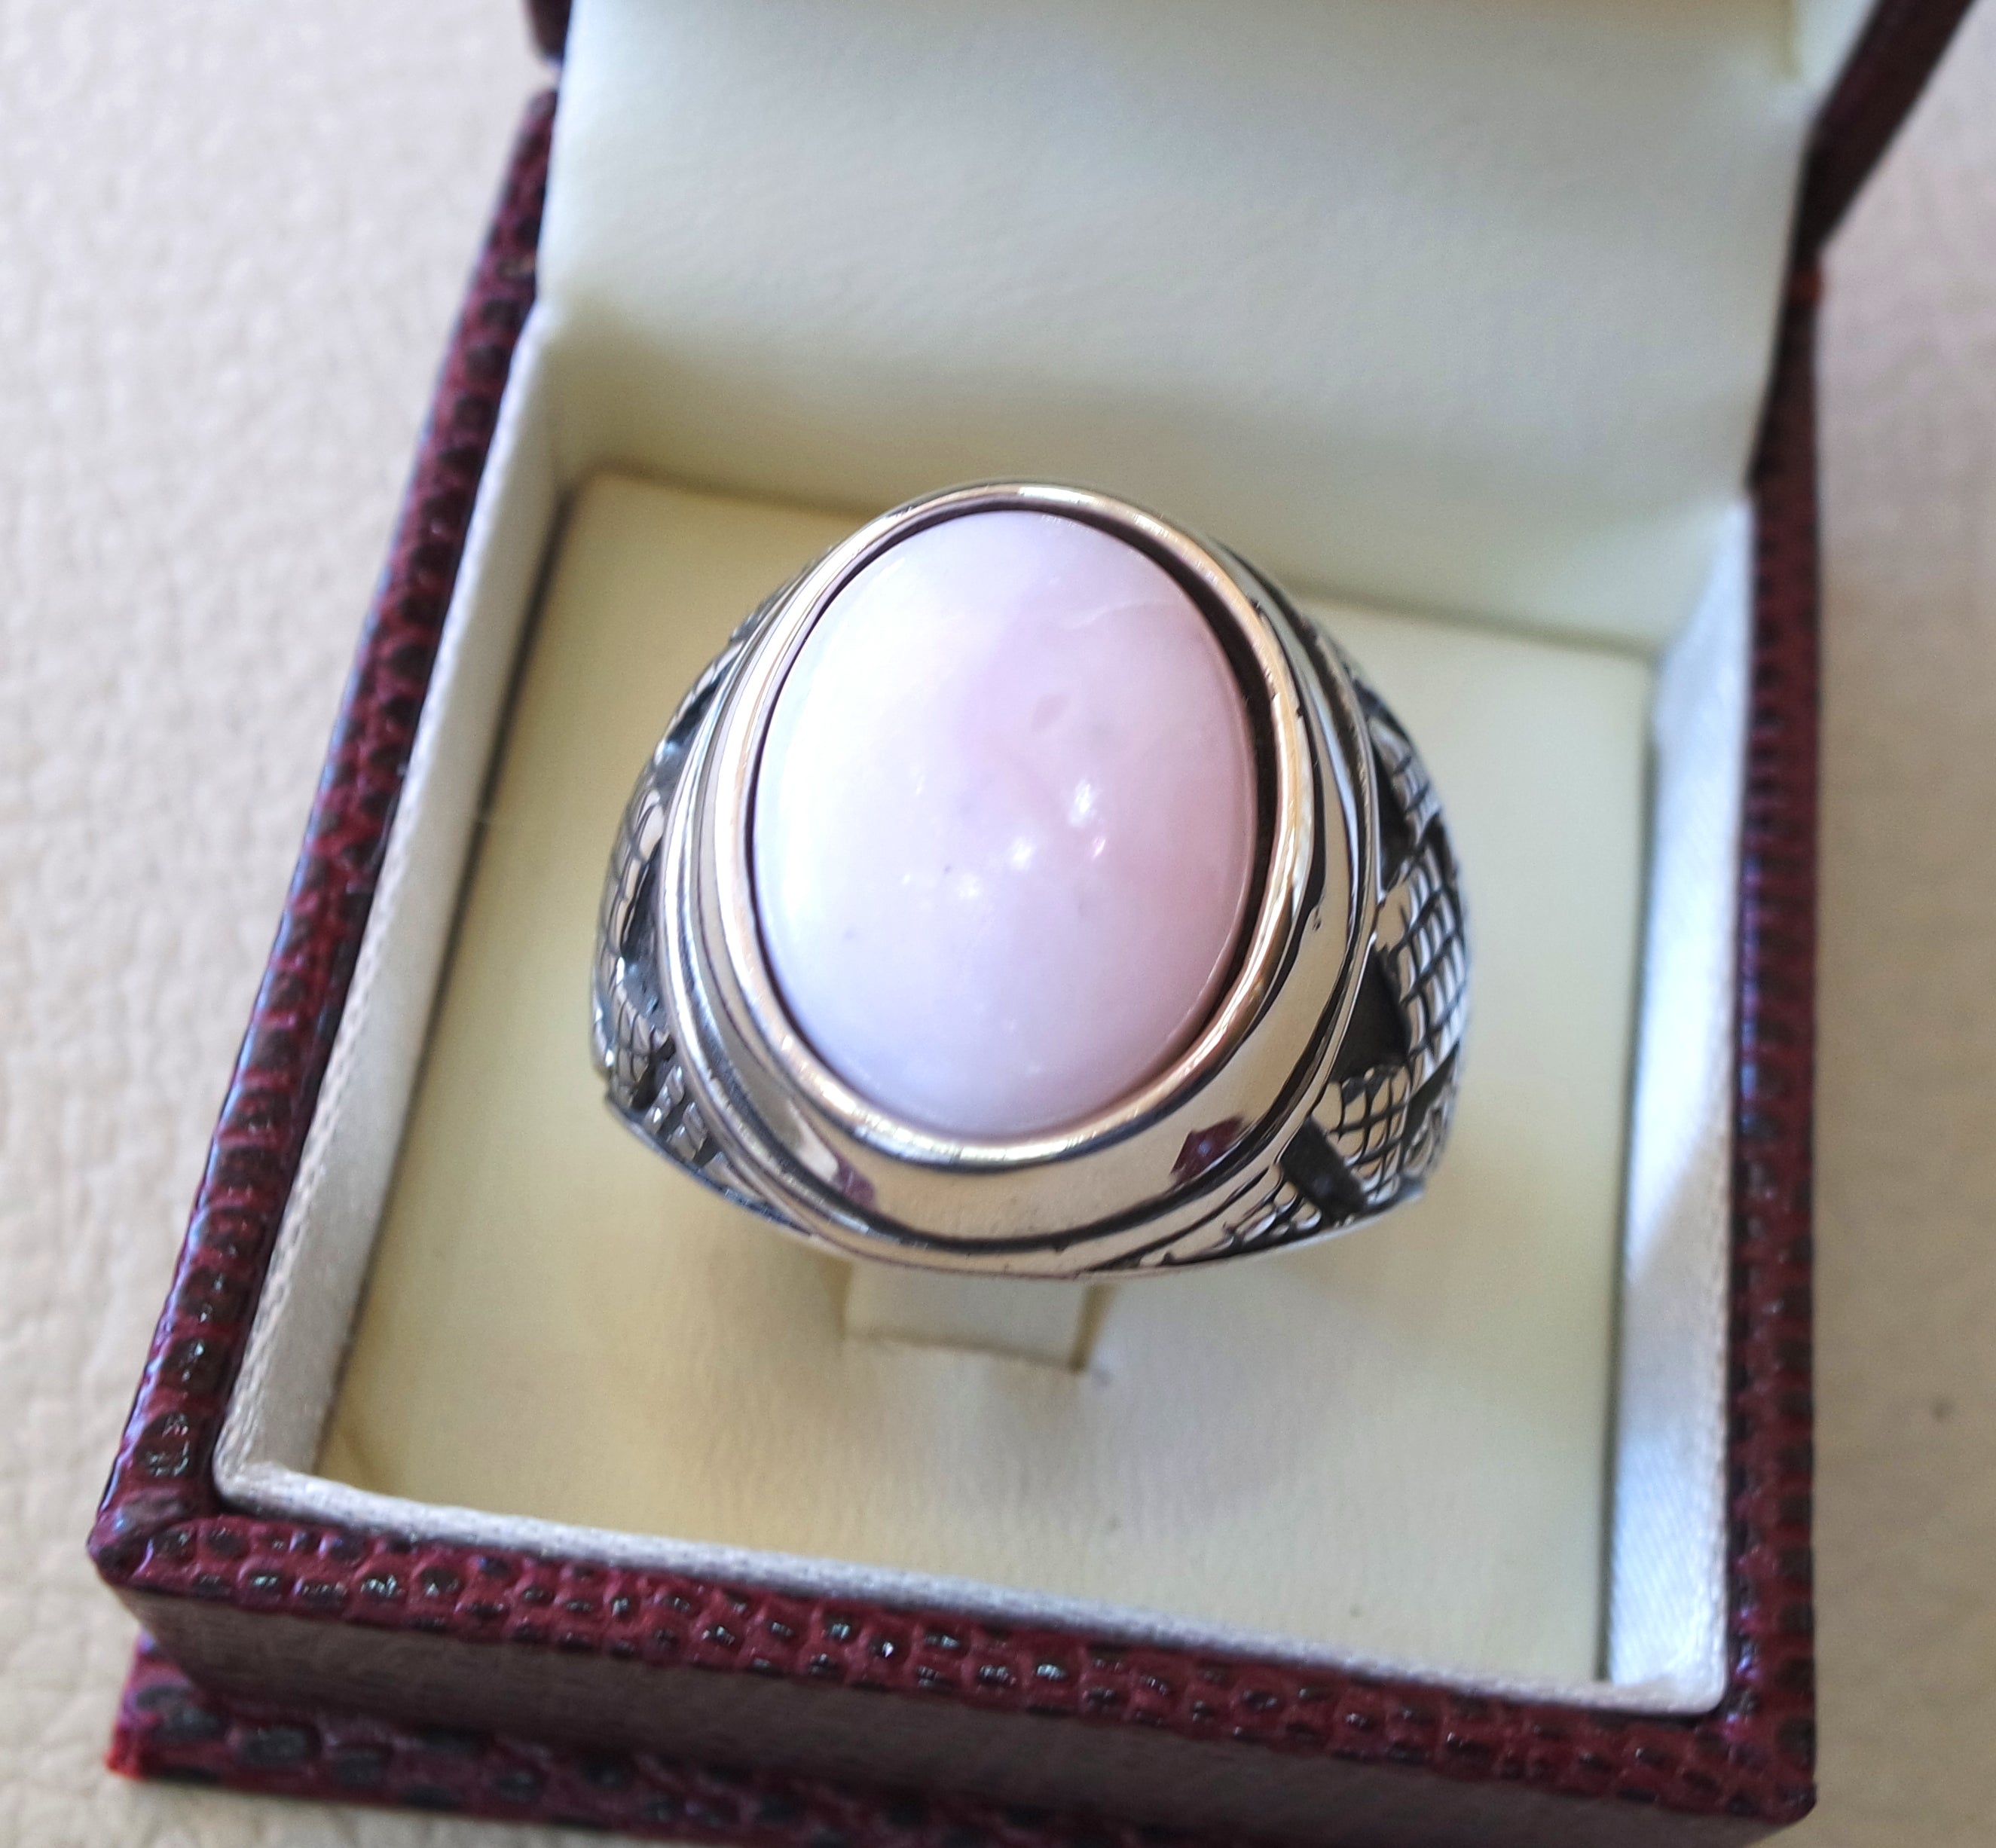 Pink opale pierre naturelle hommes anneau Sterling argent 925 superbe véritable bijou Ottoman style arabe bijoux toutes les tailles